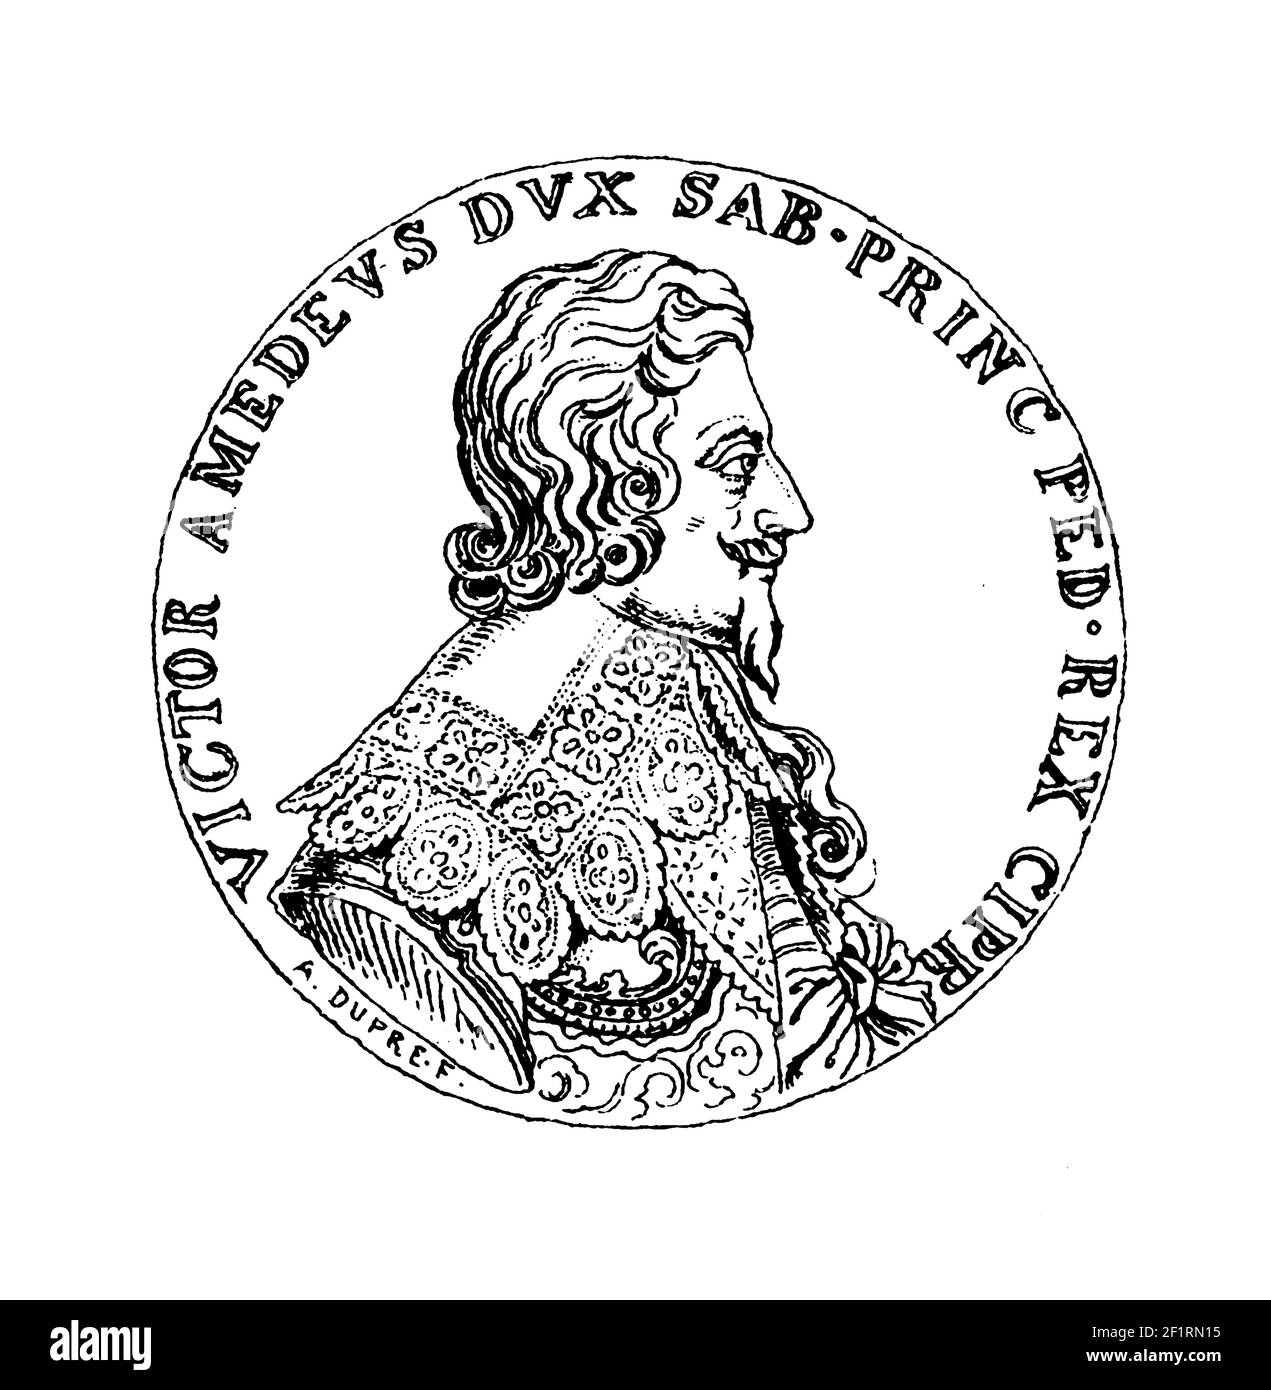 Incisione ottocentesca di un ritratto di Victor Amadeus i, duca di Savoia. È nato l'8 maggio 1587 a Torino e morì il 7 ottobre 1637 anche io Foto Stock